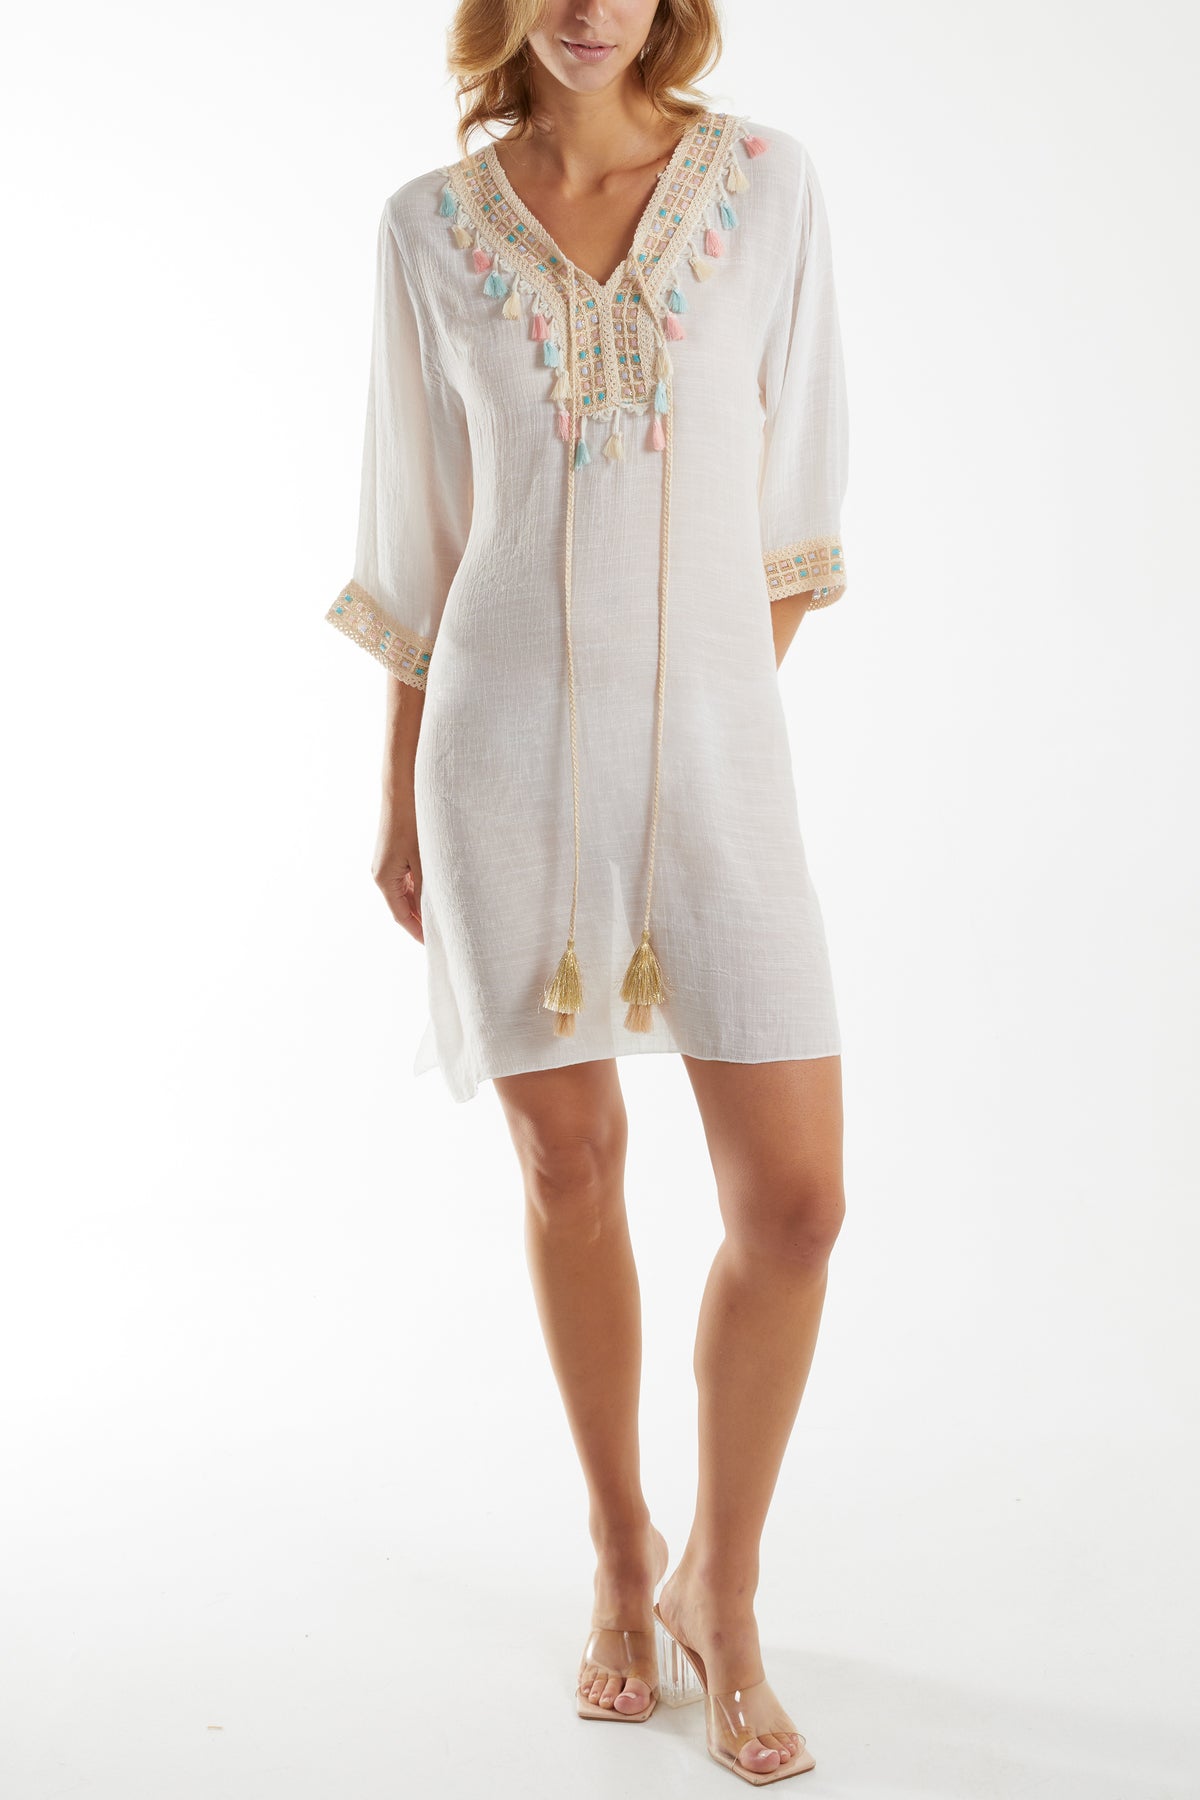 Crochet Tassel Lightweight Linen Tunic Dress